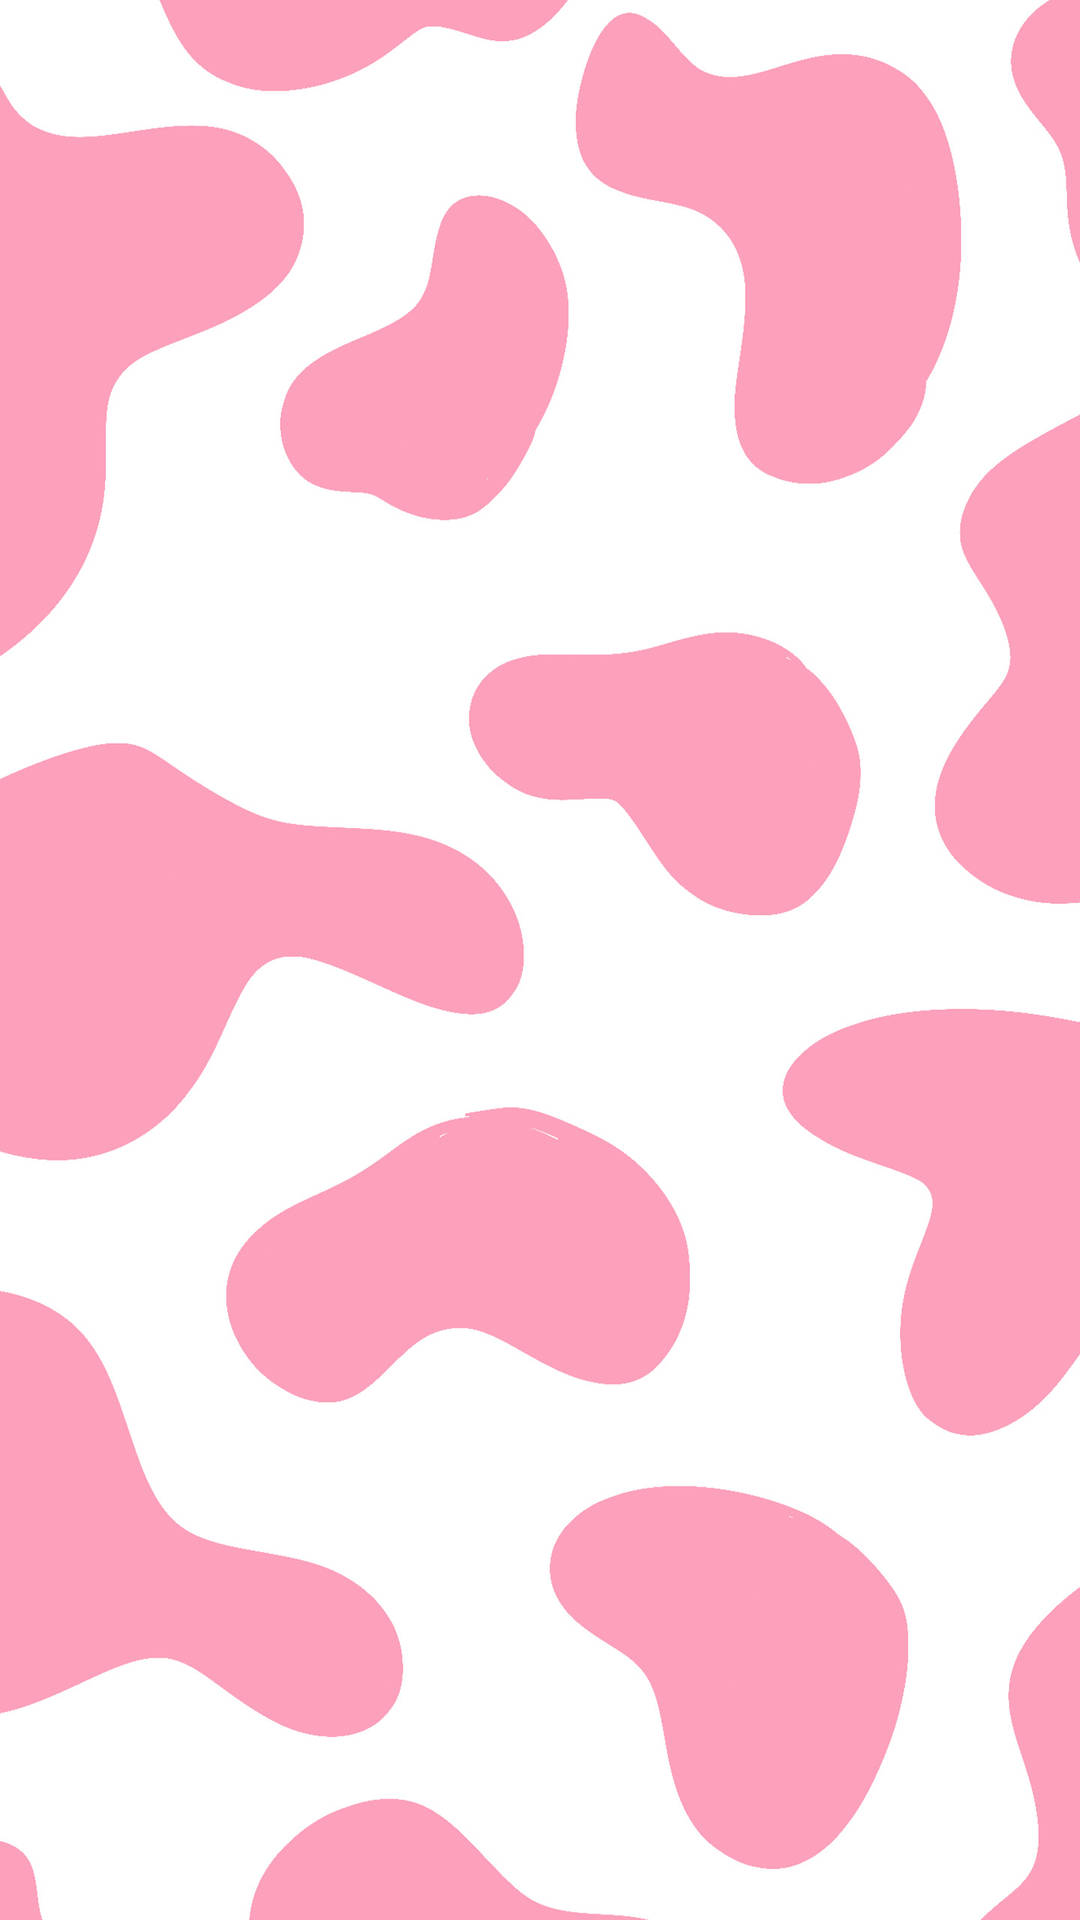 Hình nền Strawberry Cow là lựa chọn hoàn hảo cho những người yêu thích phong cách nữ tính và dễ thương. Với màu hồng nhẹ nhàng và hình ảnh con bò nhỏ, chiếc máy tính của bạn sẽ trở nên nổi bật và đáng yêu hơn bao giờ hết.